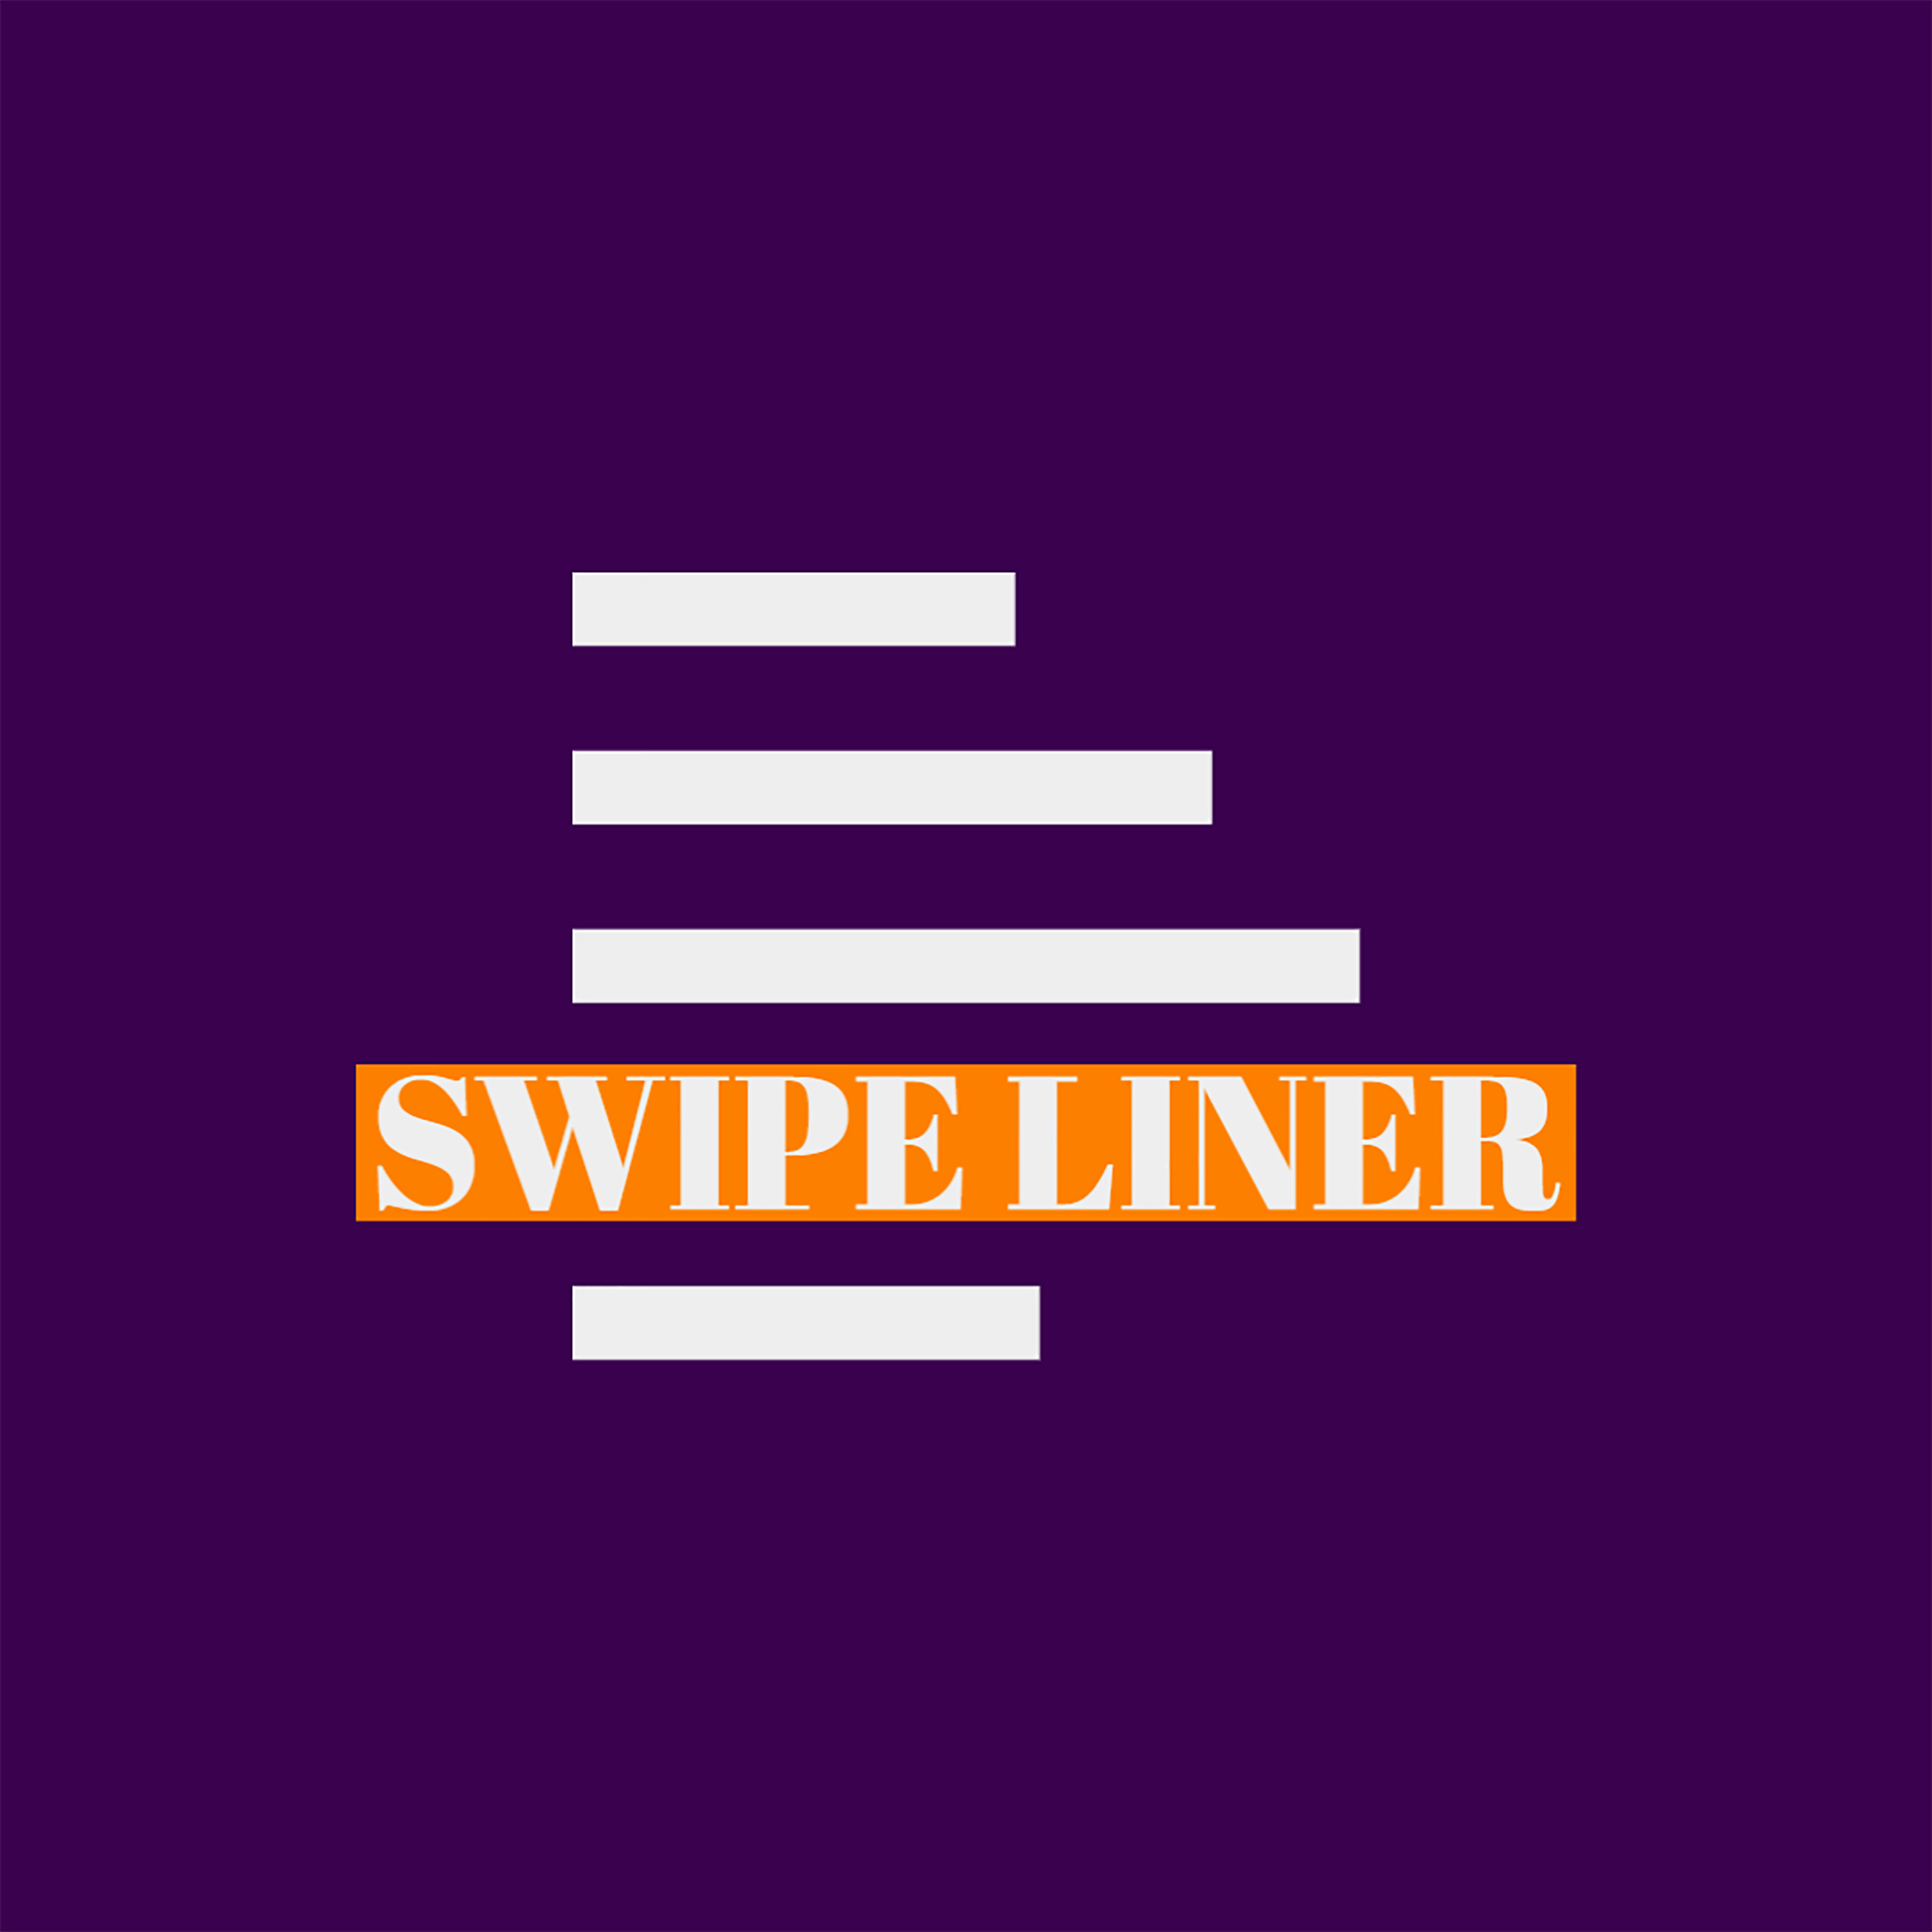 SWIPE LINER logo